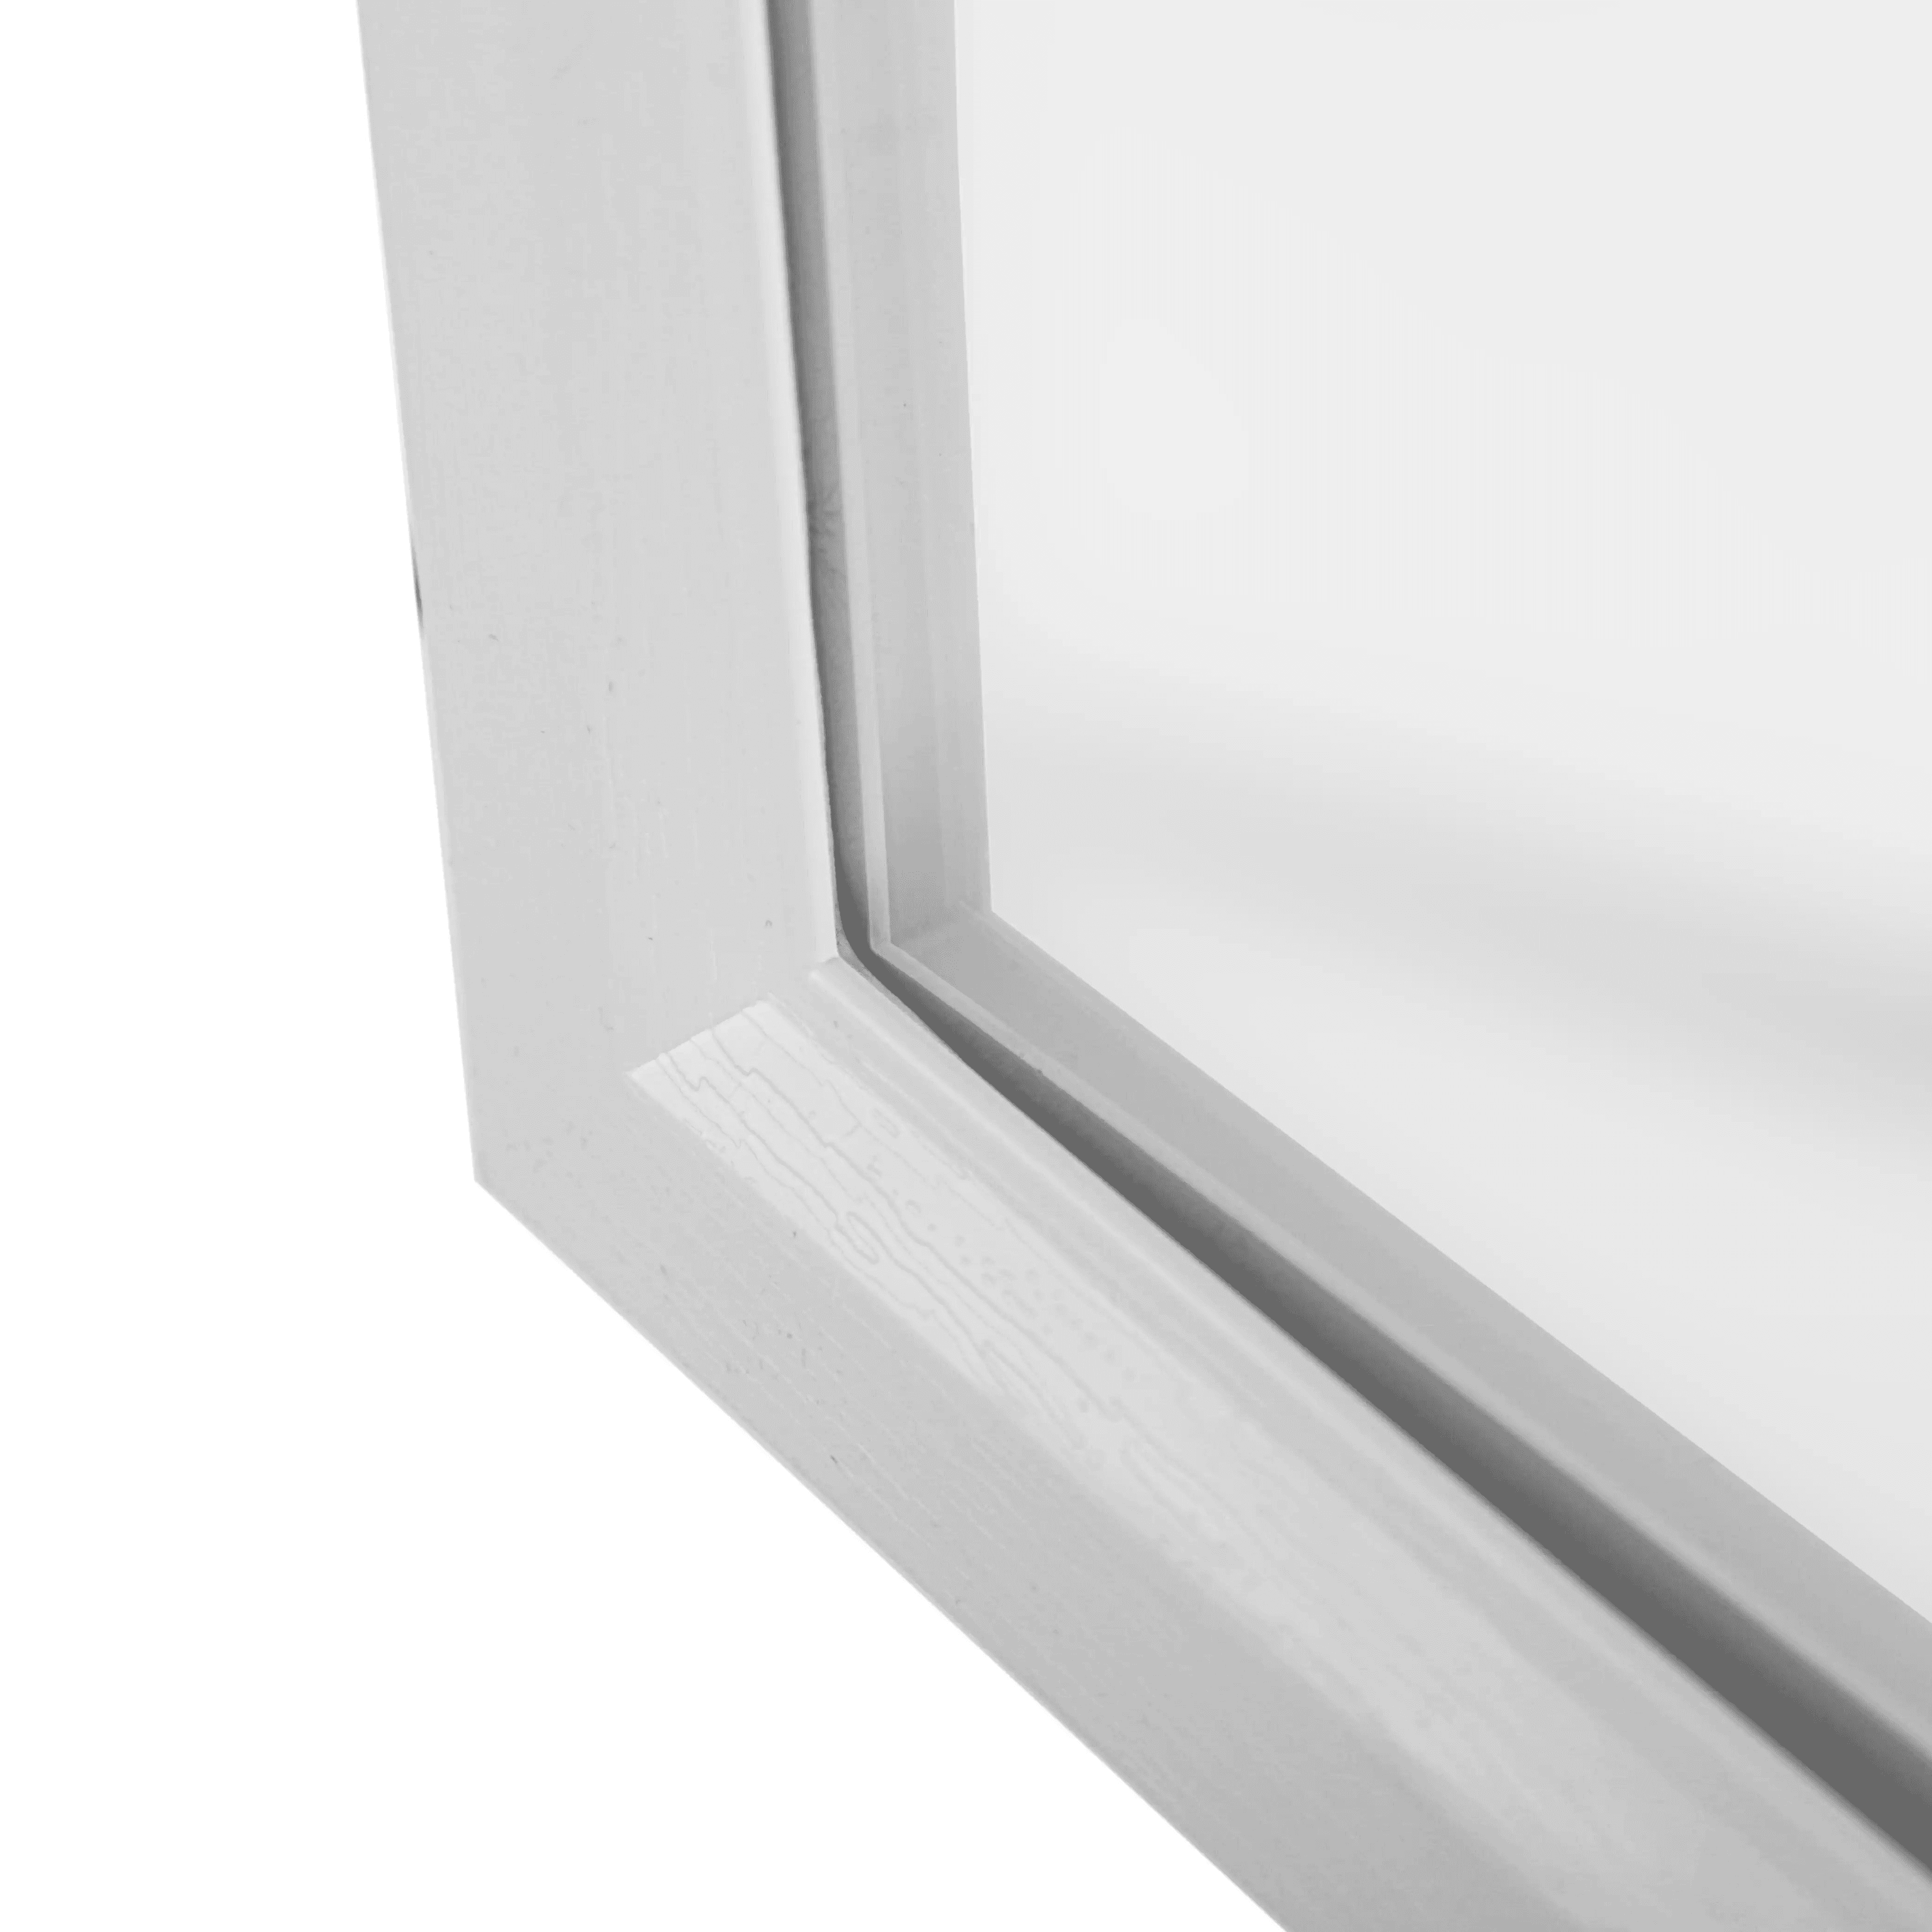 Garage Door Land 1420 Window close up on window gap white frame